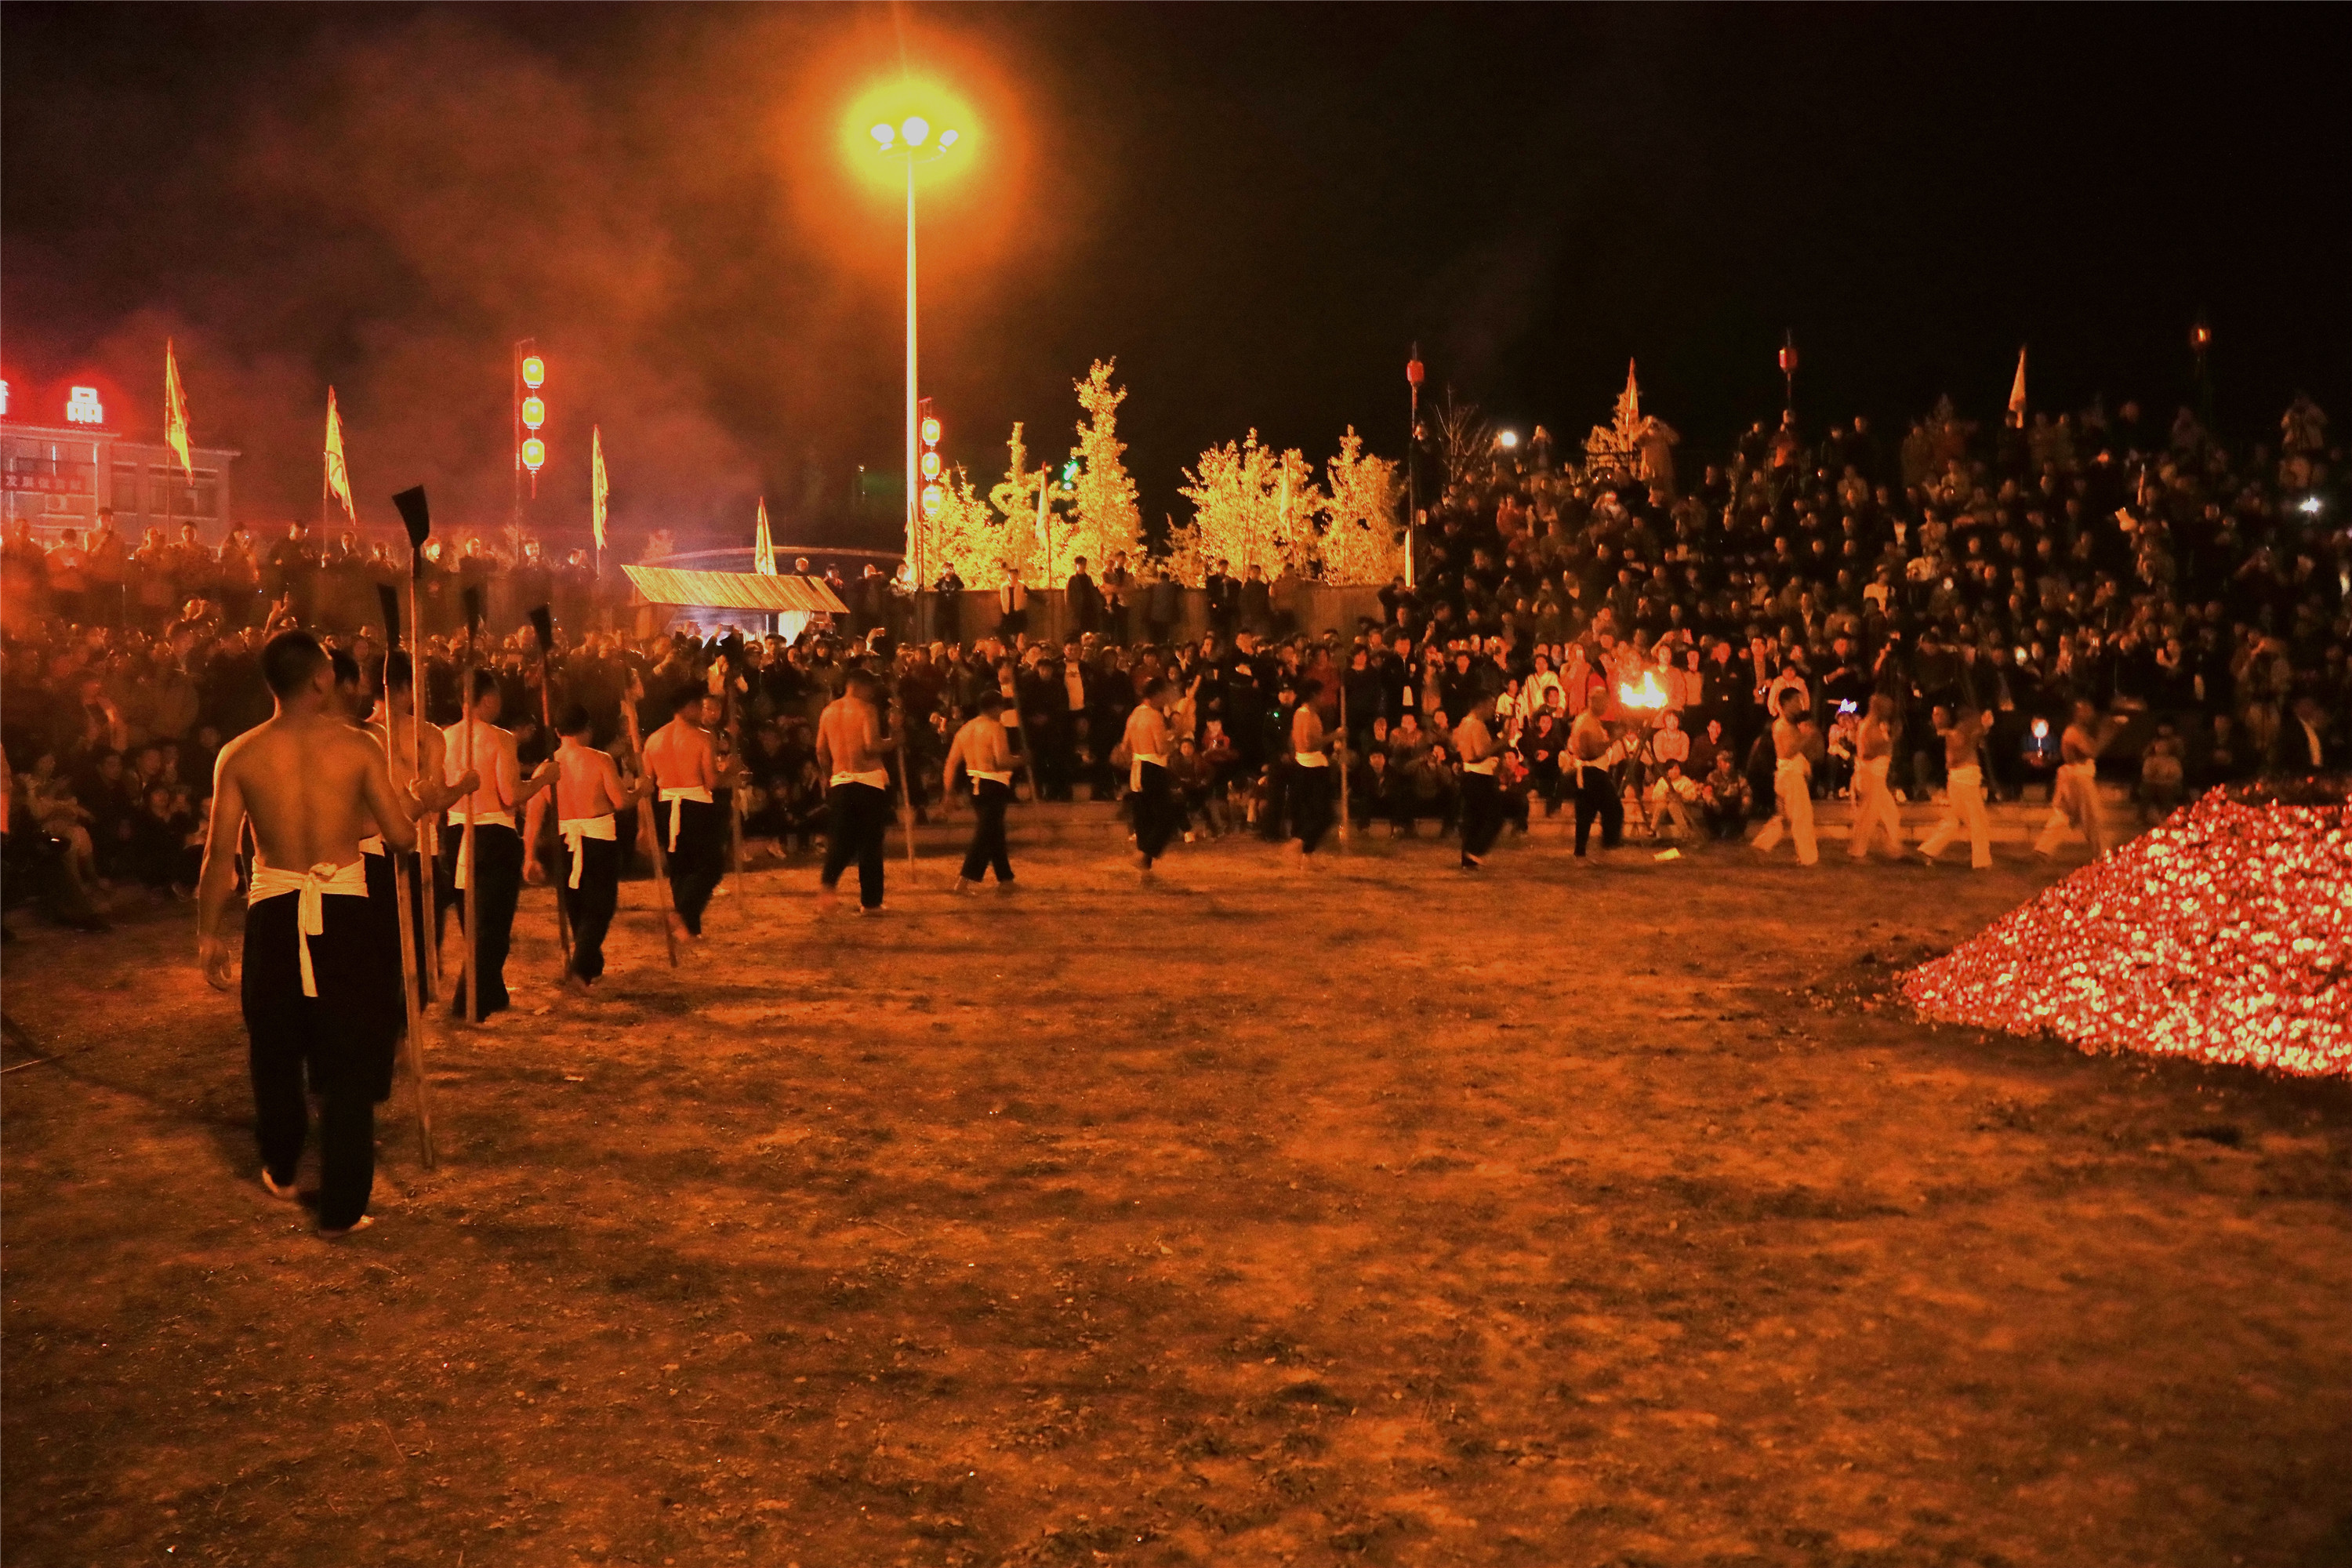 磐安炼火是一种古老的民俗活动,主要流传在浙江省金华市磐安县双峰